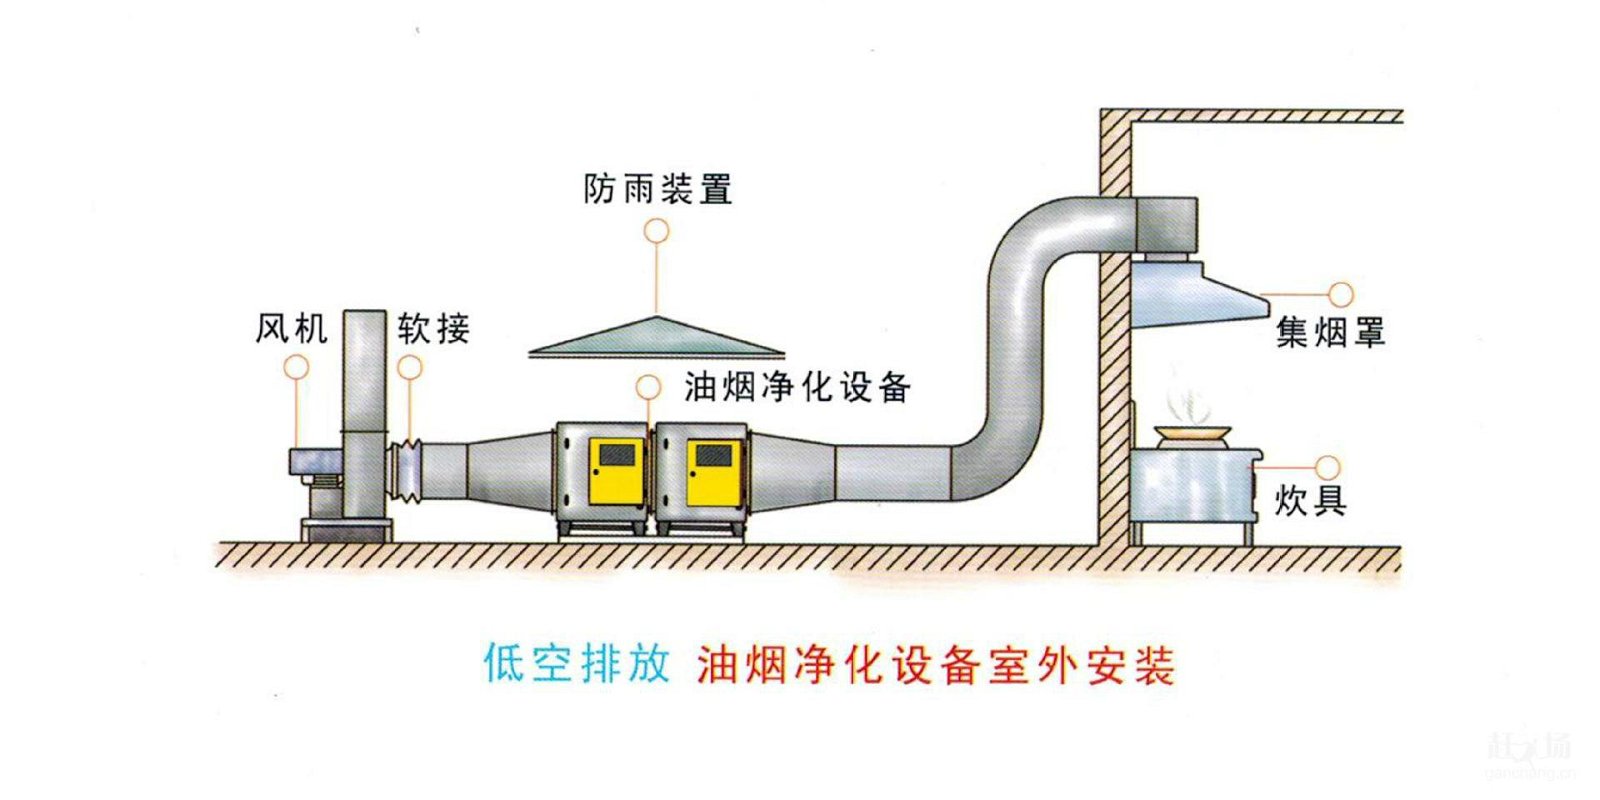 廣州專業小中大型廚房工程抽排系統工程設計安裝 2